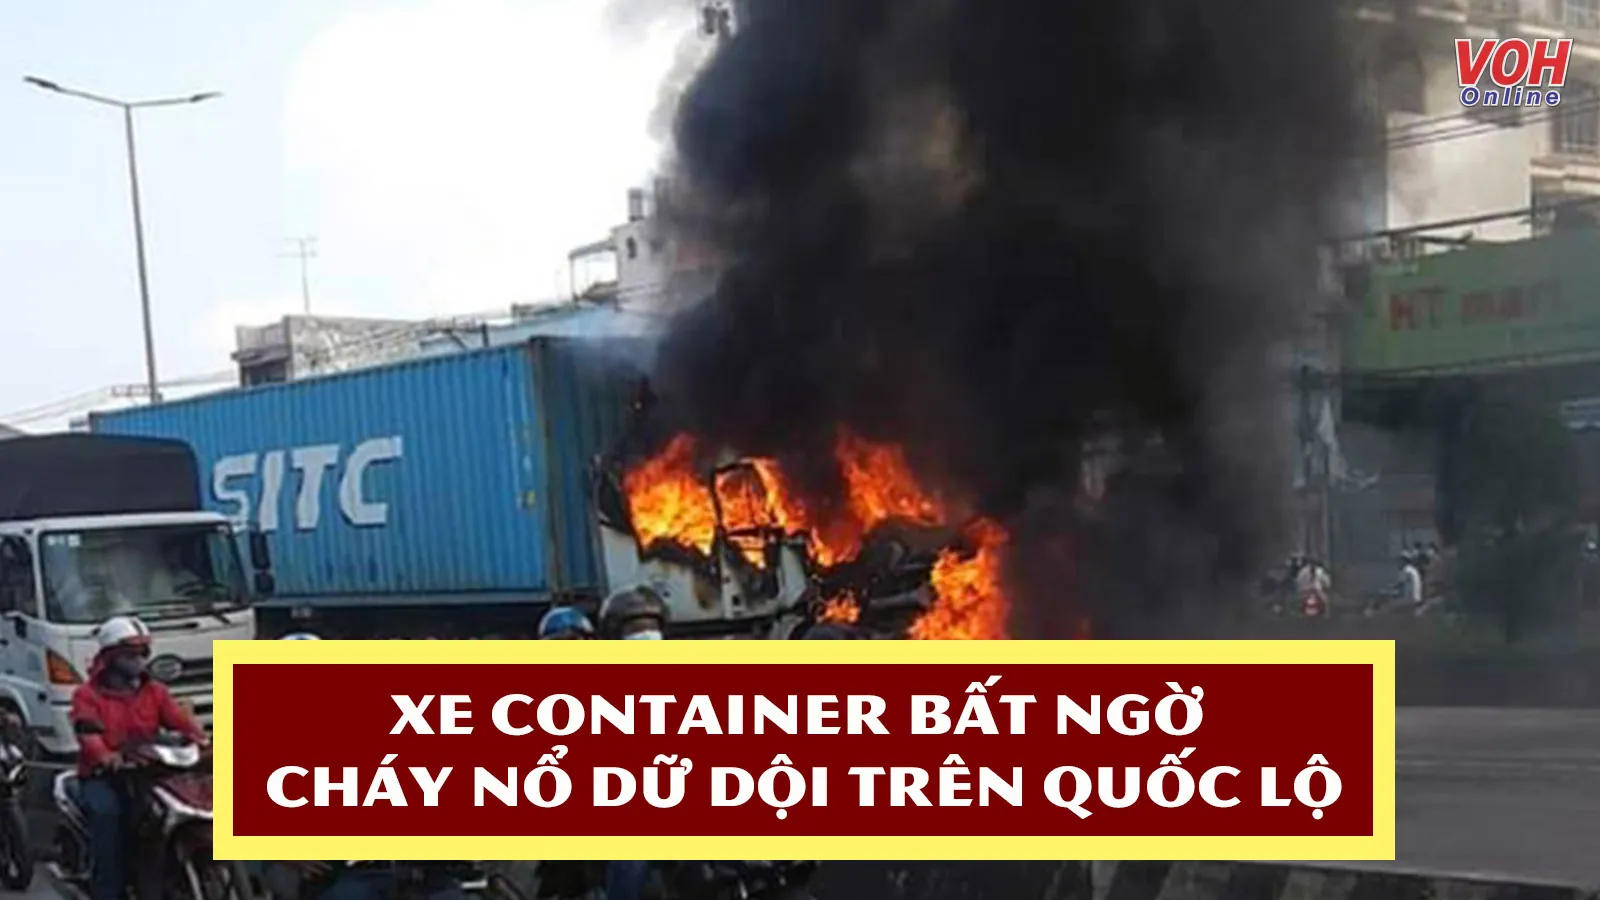 Đồng Nai: Xe container bất ngờ cháy nổ dữ dội khi đang chạy trên quốc lộ